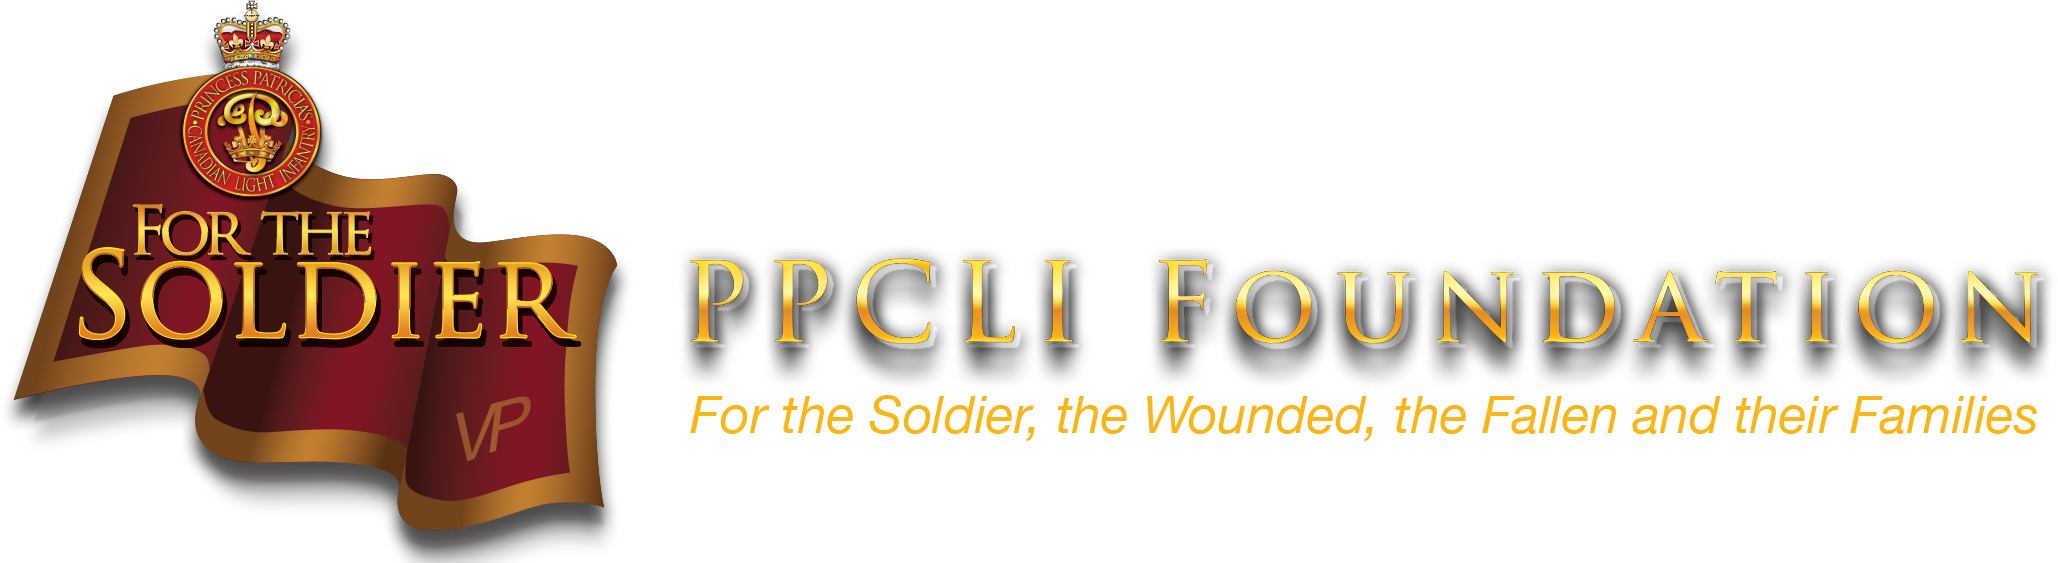 PPCLI Foundation